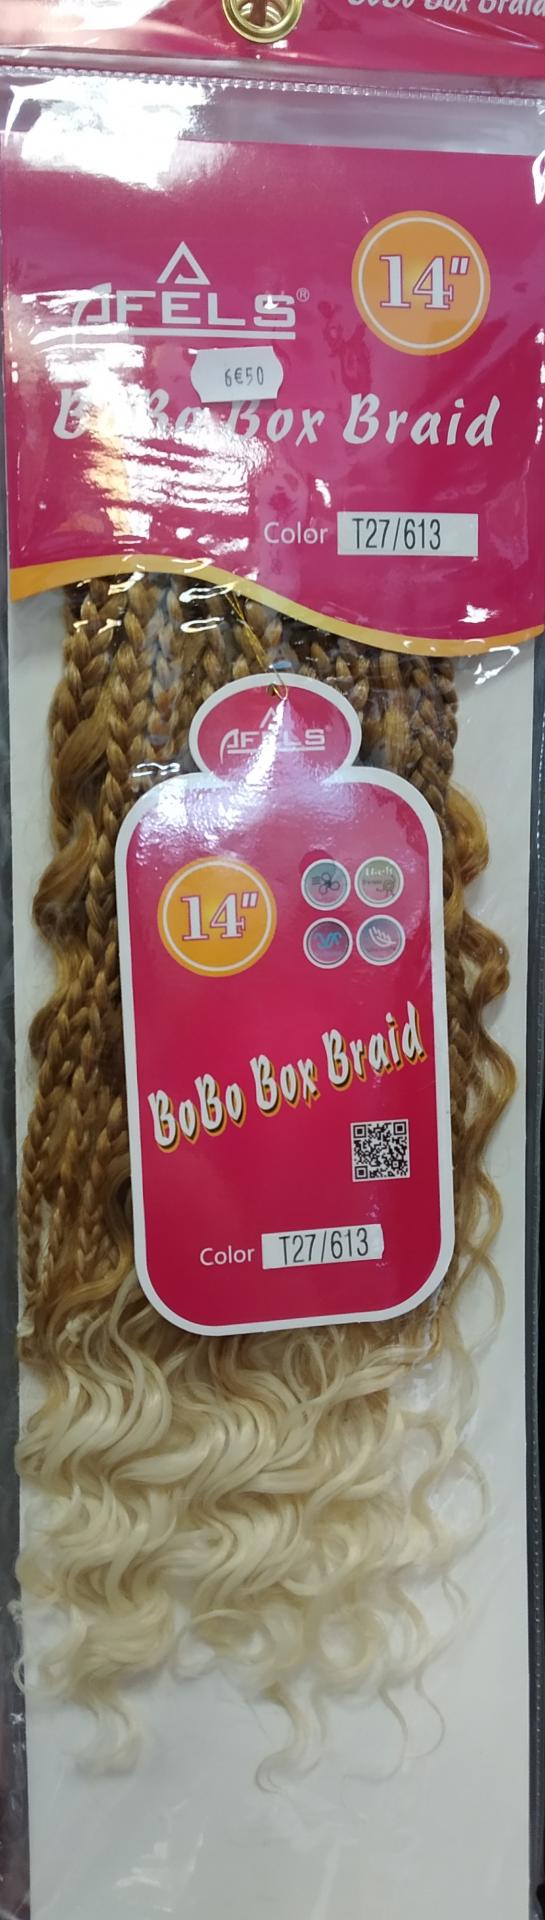 Bobo box braid 14